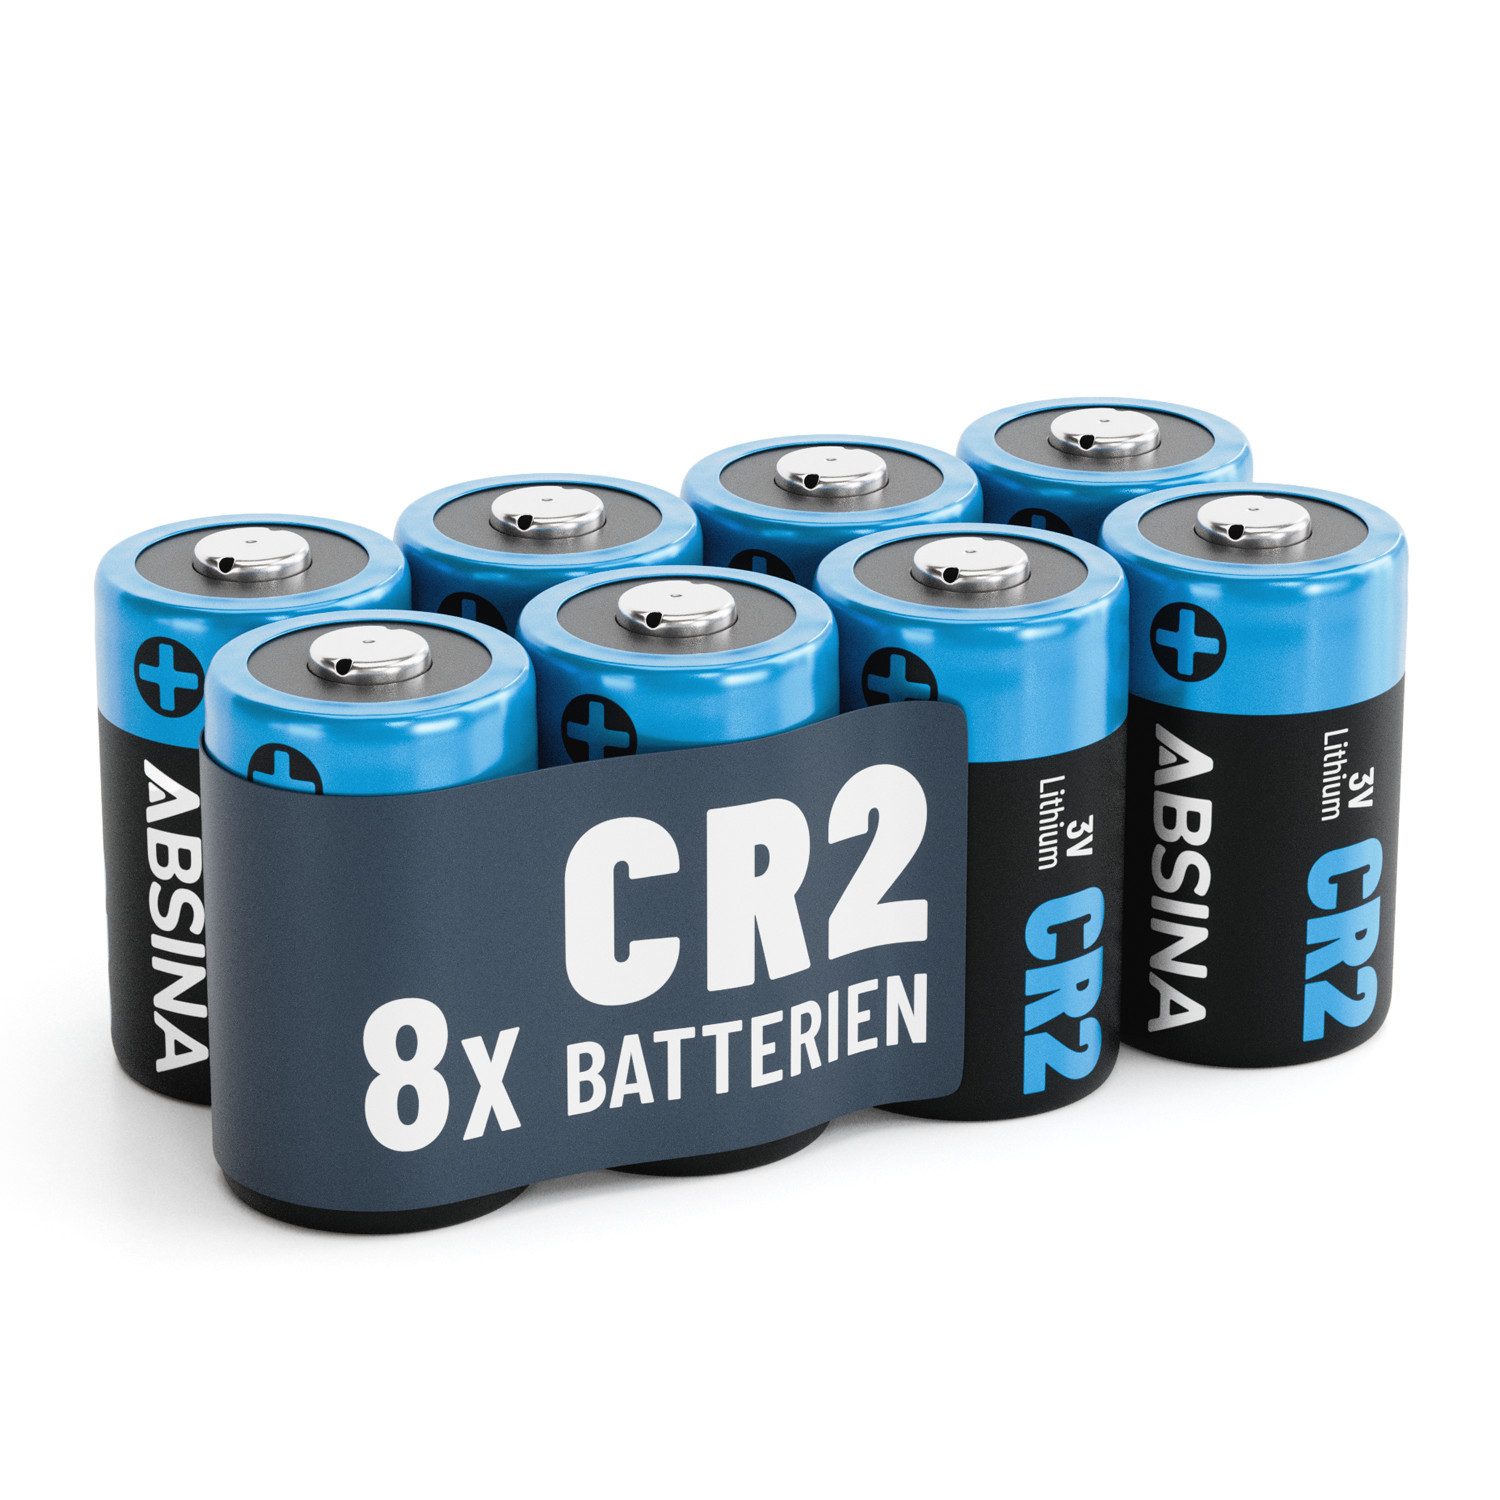 ABSINA 8x CR2 3V Lithium Batterie für Kamera, Fotoapparat, auslaufsicher Batterie, (1 St)